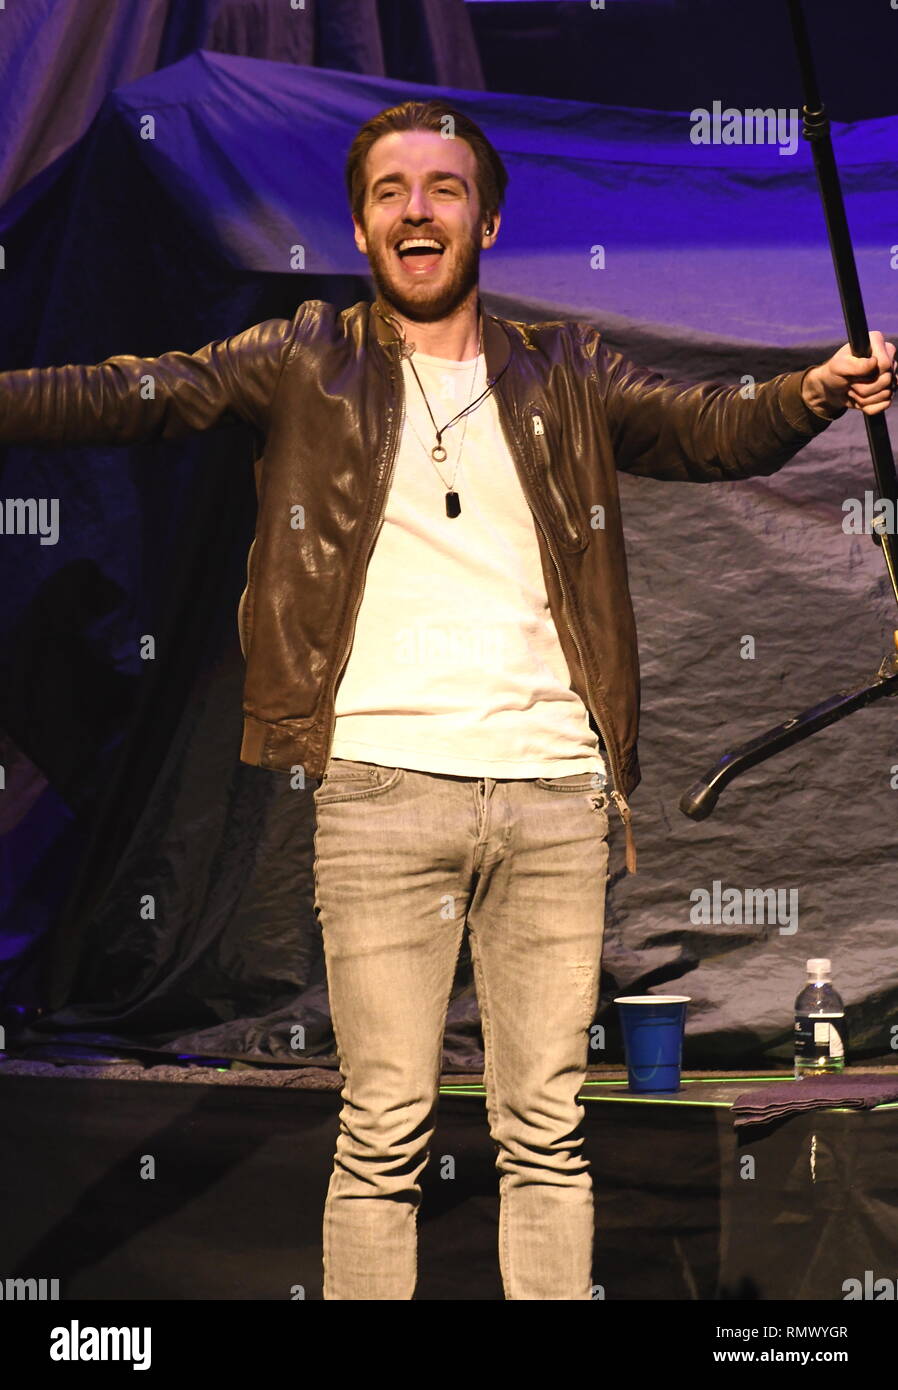 Singer Brandon Lancaster est montré sur scène pendant un concert 'live' apparence avec Lanco. Banque D'Images